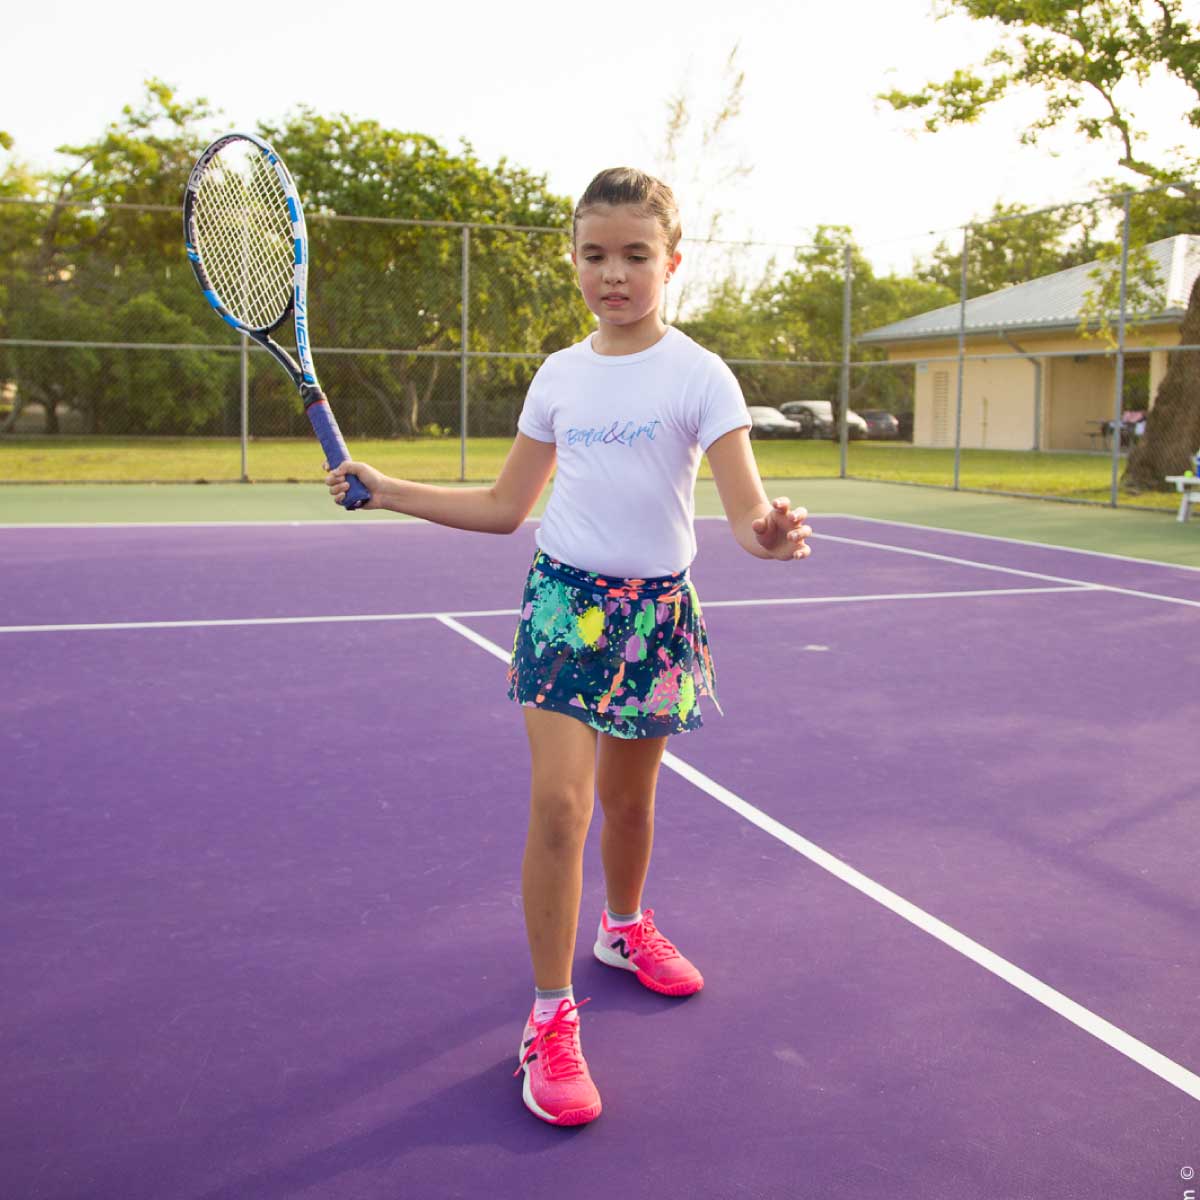 Oferta Camiseta blanca para niña en Tennis